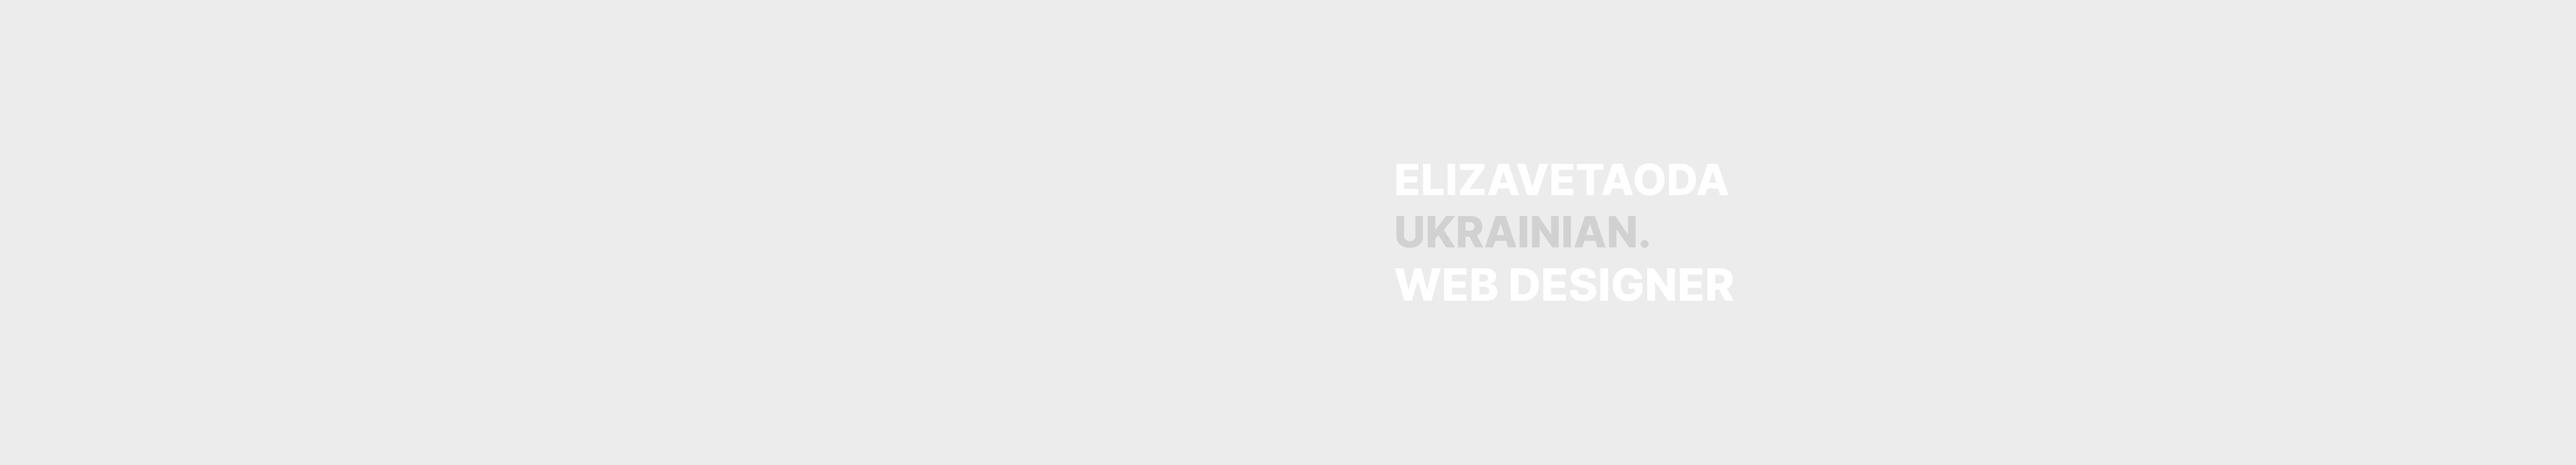 Elizaveta Oda profil başlığı